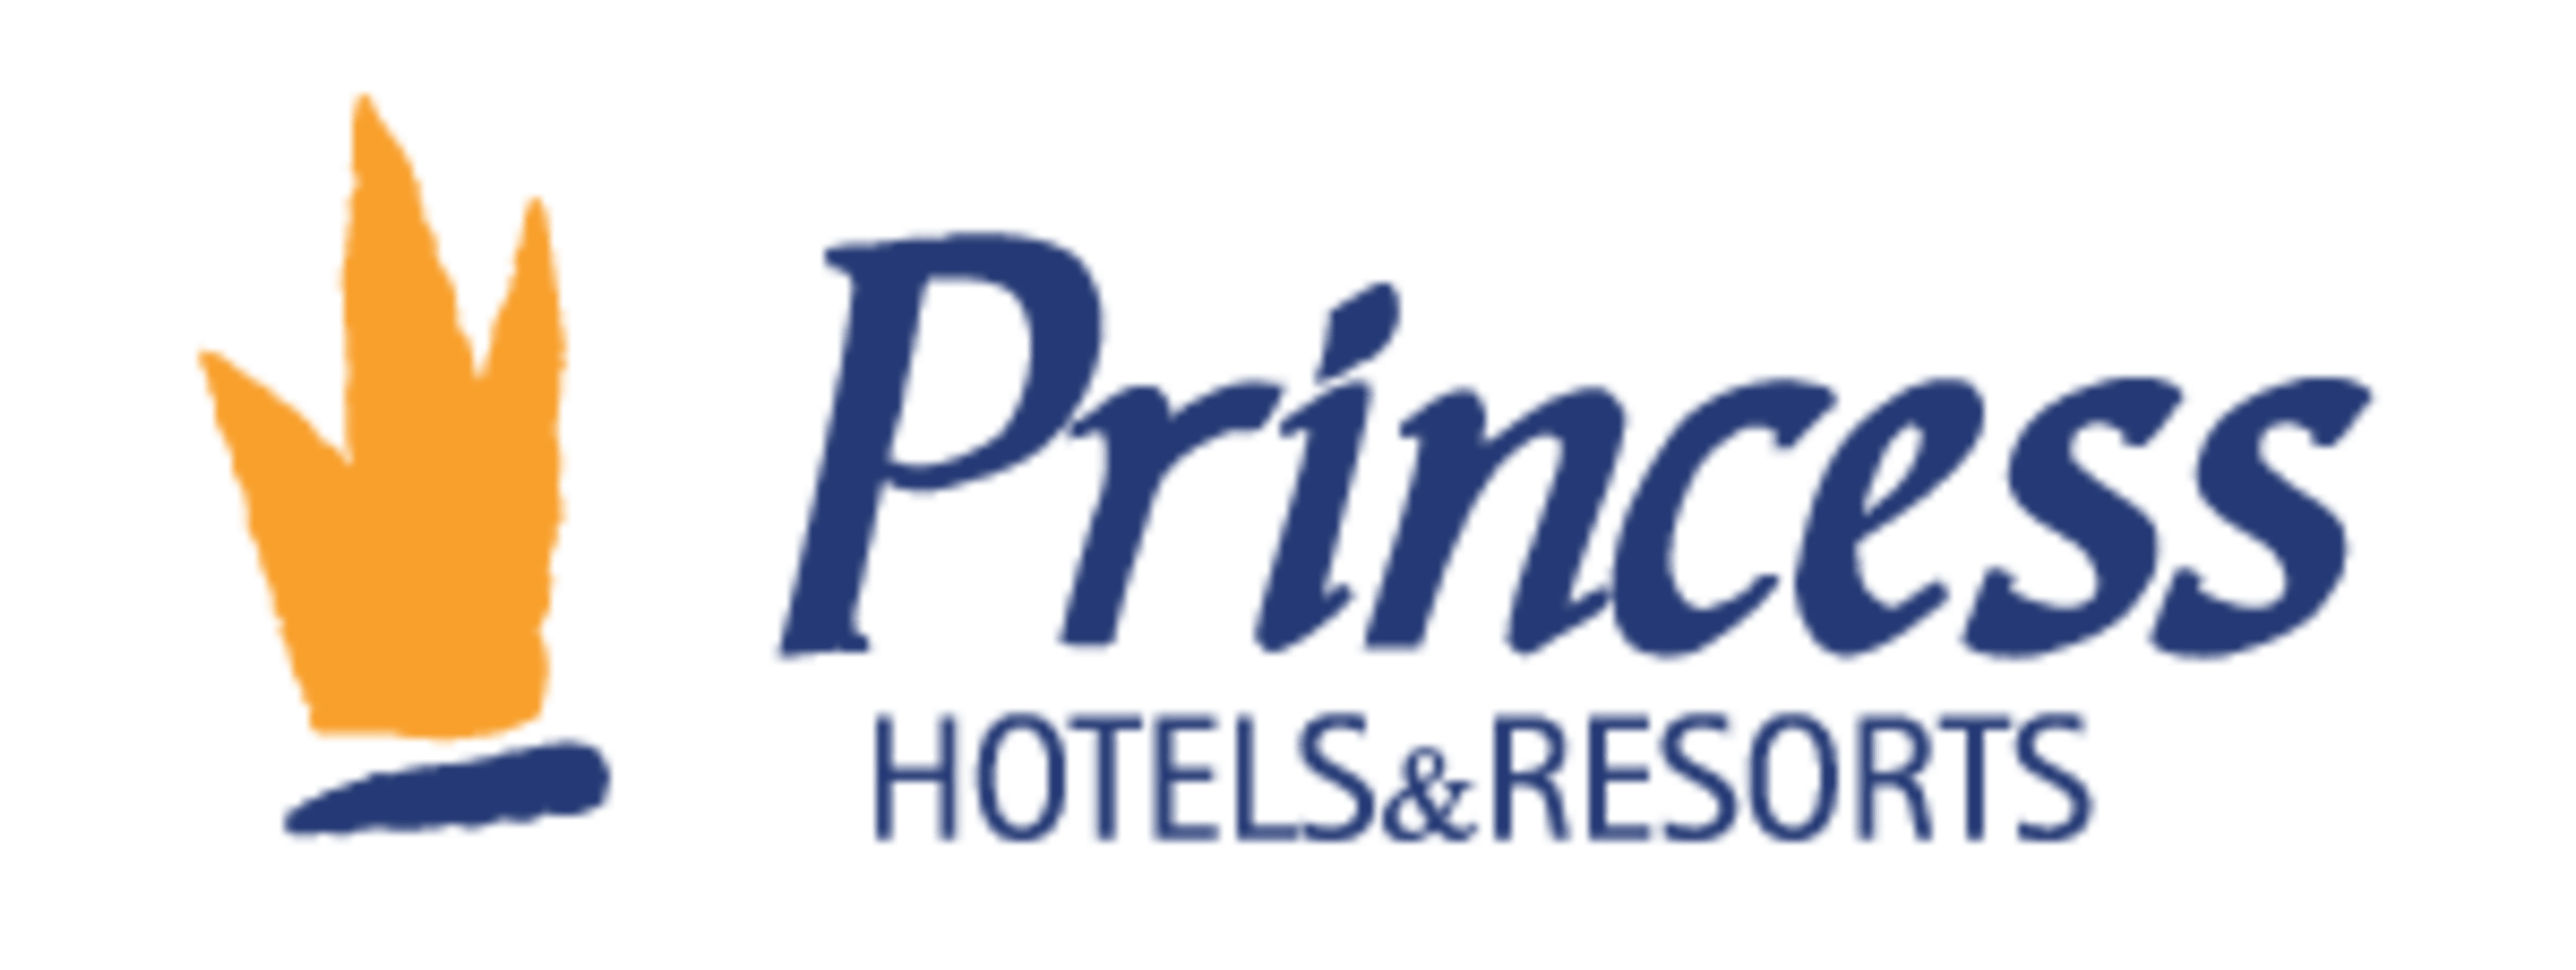 Princess Hotels and Resorts Code